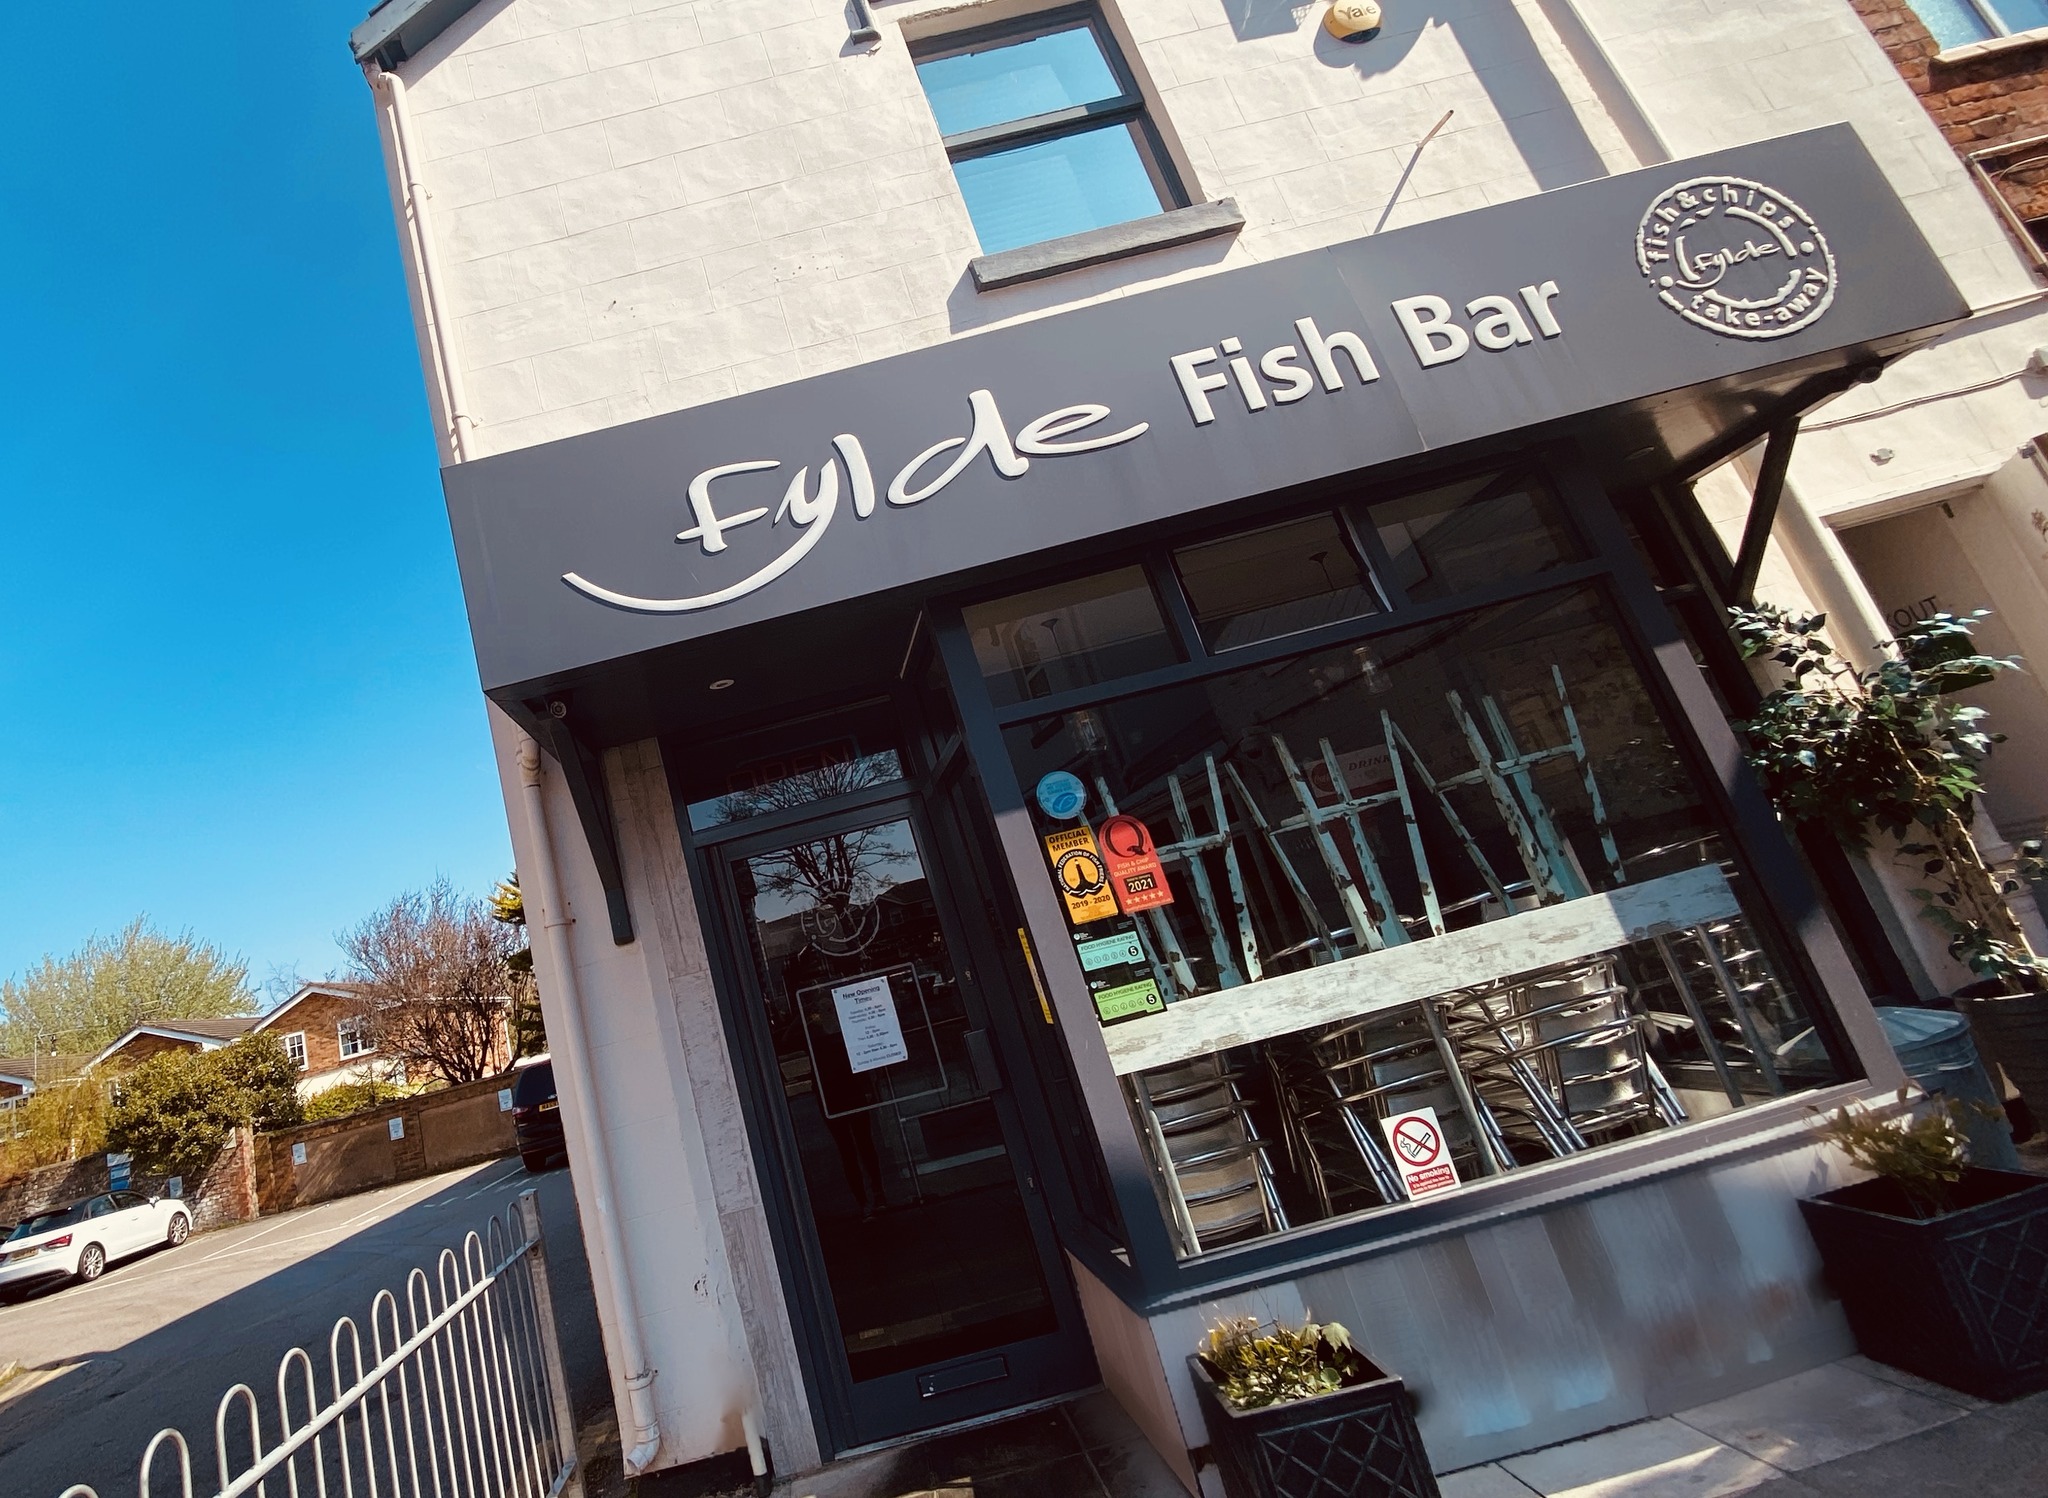 Fylde Fish Bar in Birkdale in Southport